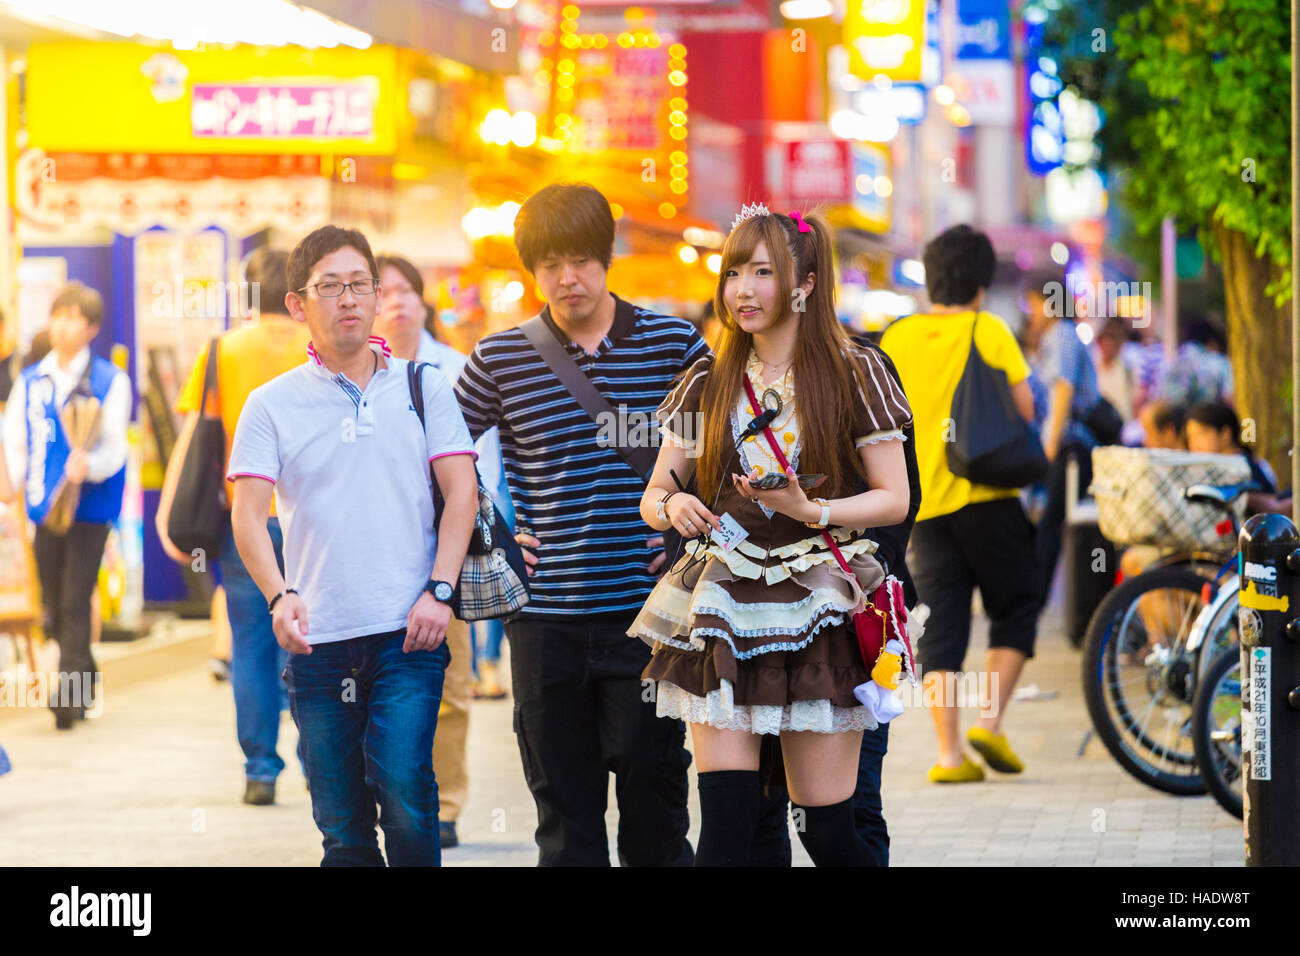 Junge japanische Mädchen in Französisch Maid Outfit anziehen der männlichen Kunden auf dem Bürgersteig um japanische Maid Café Restaurant betreten Stockfoto